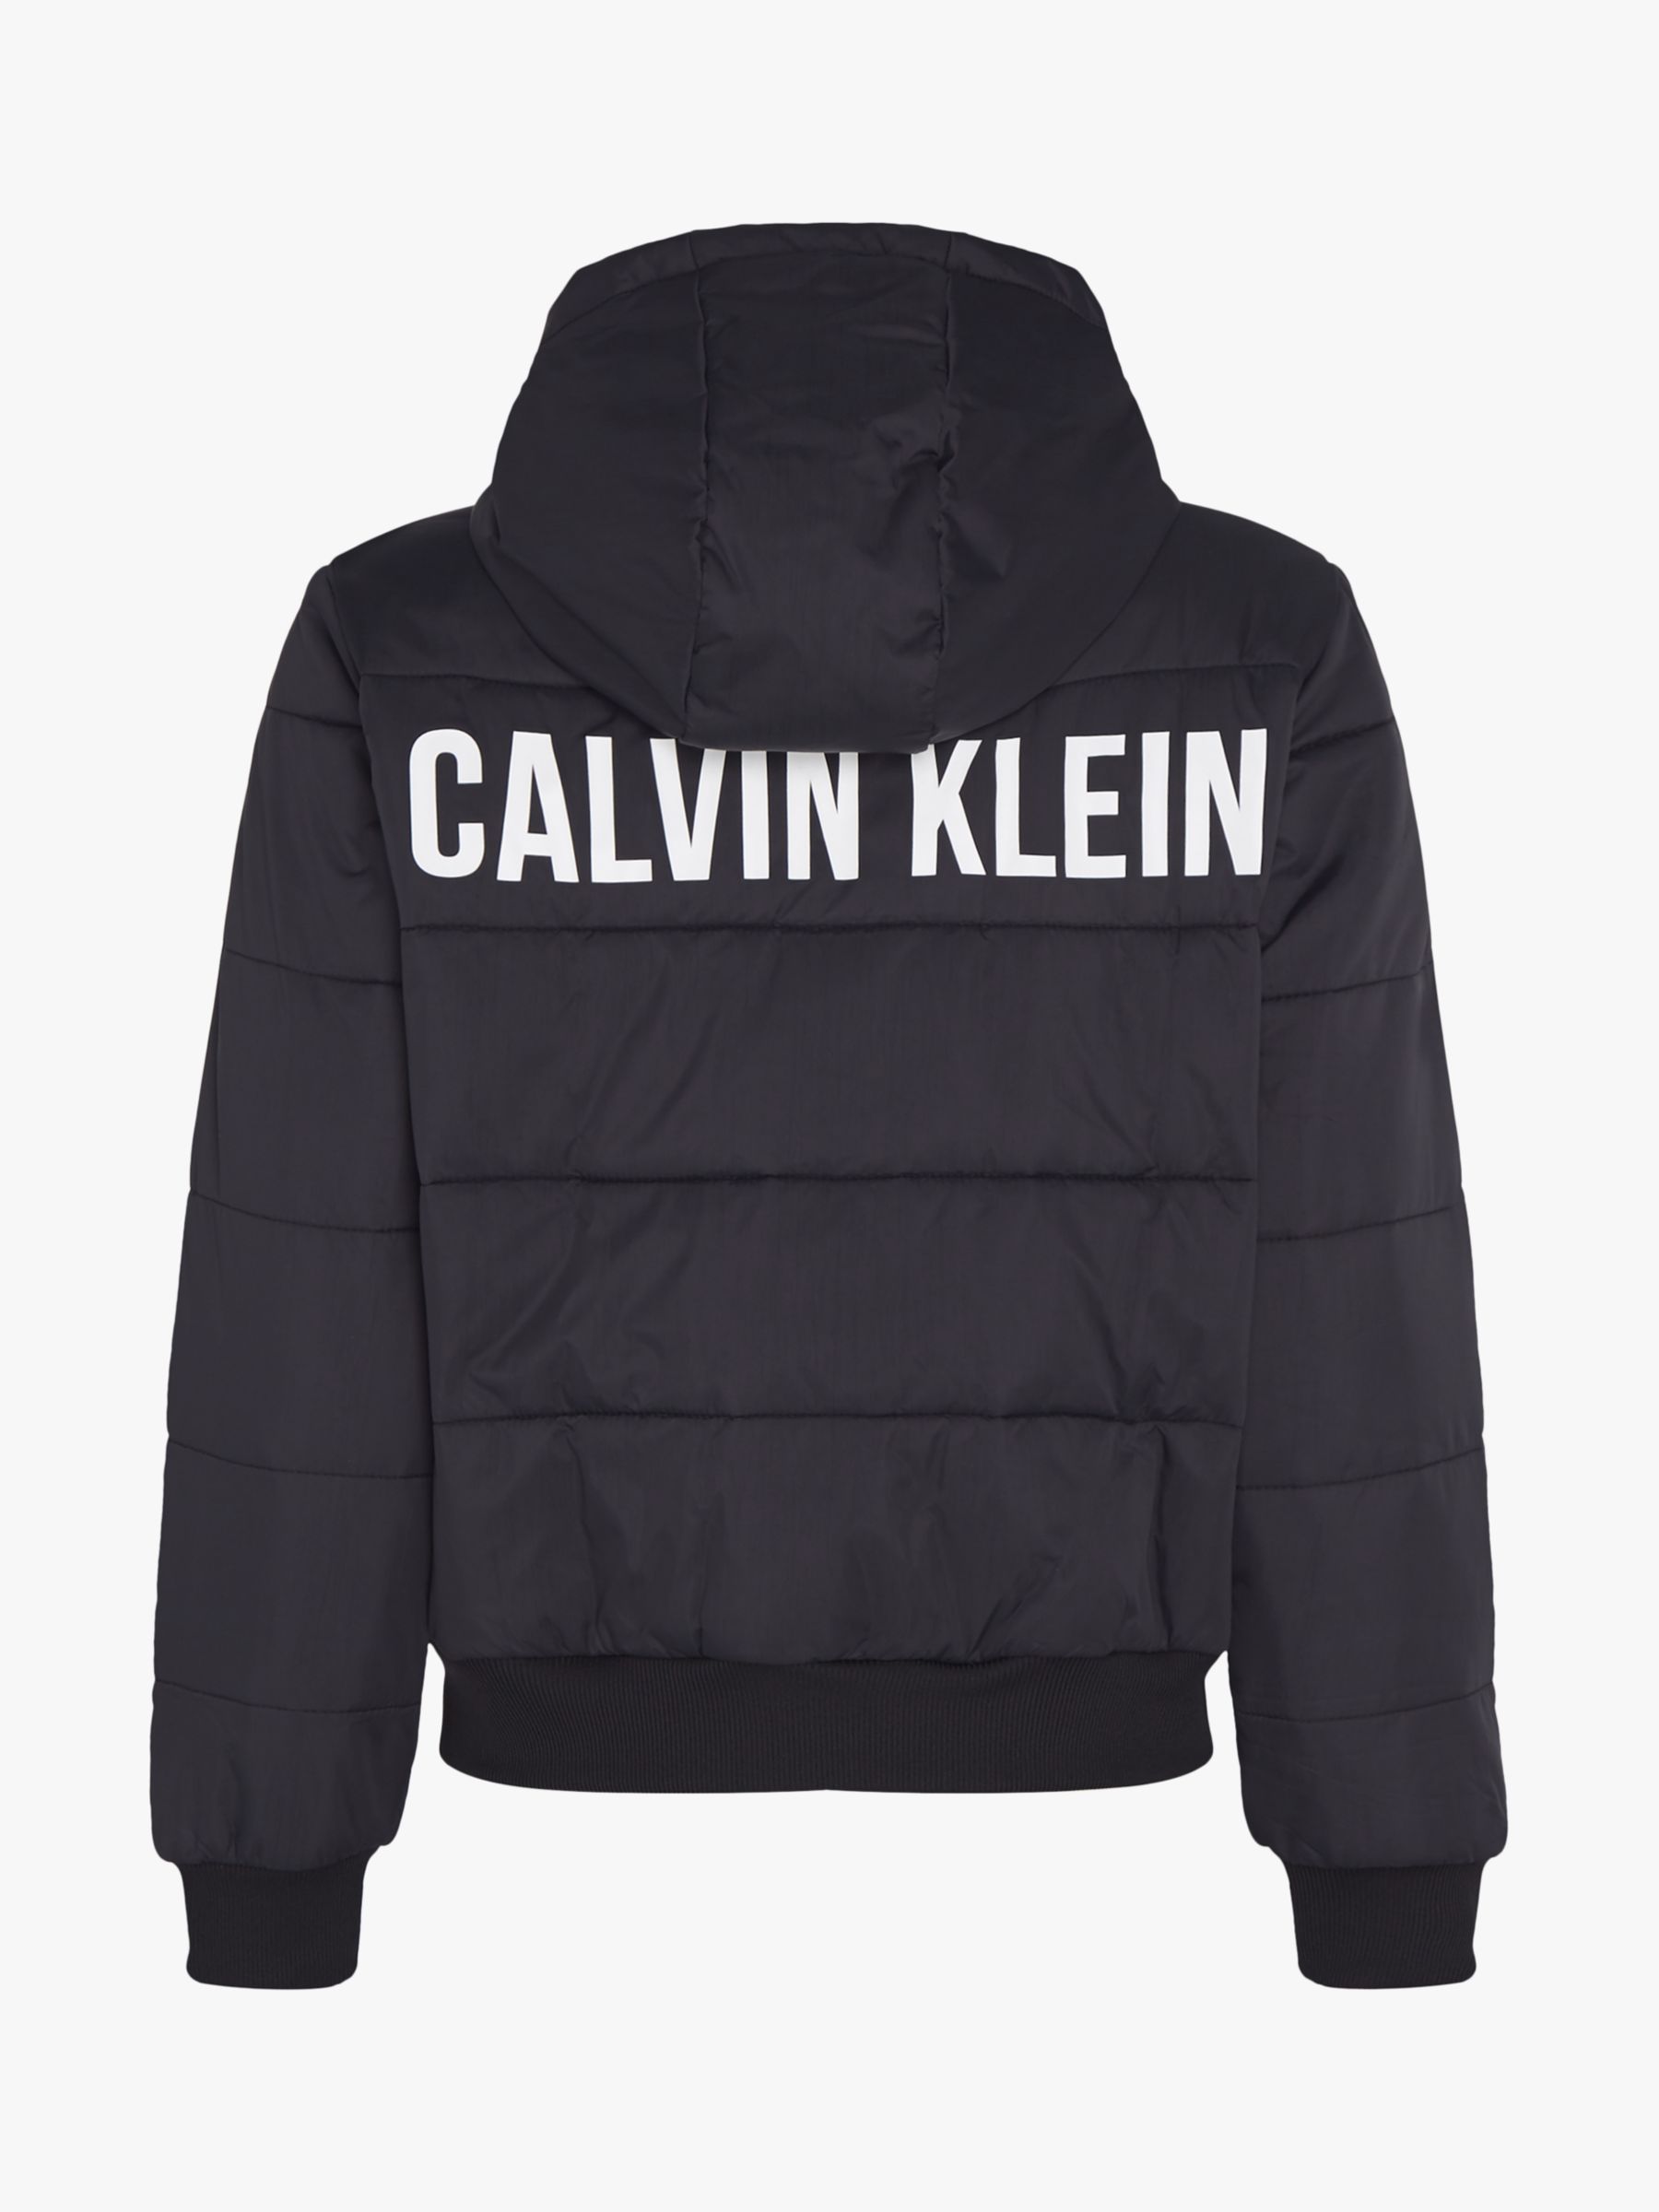 Calvin Klein Performance Padded Jacket, CK Black at John Lewis & Partners